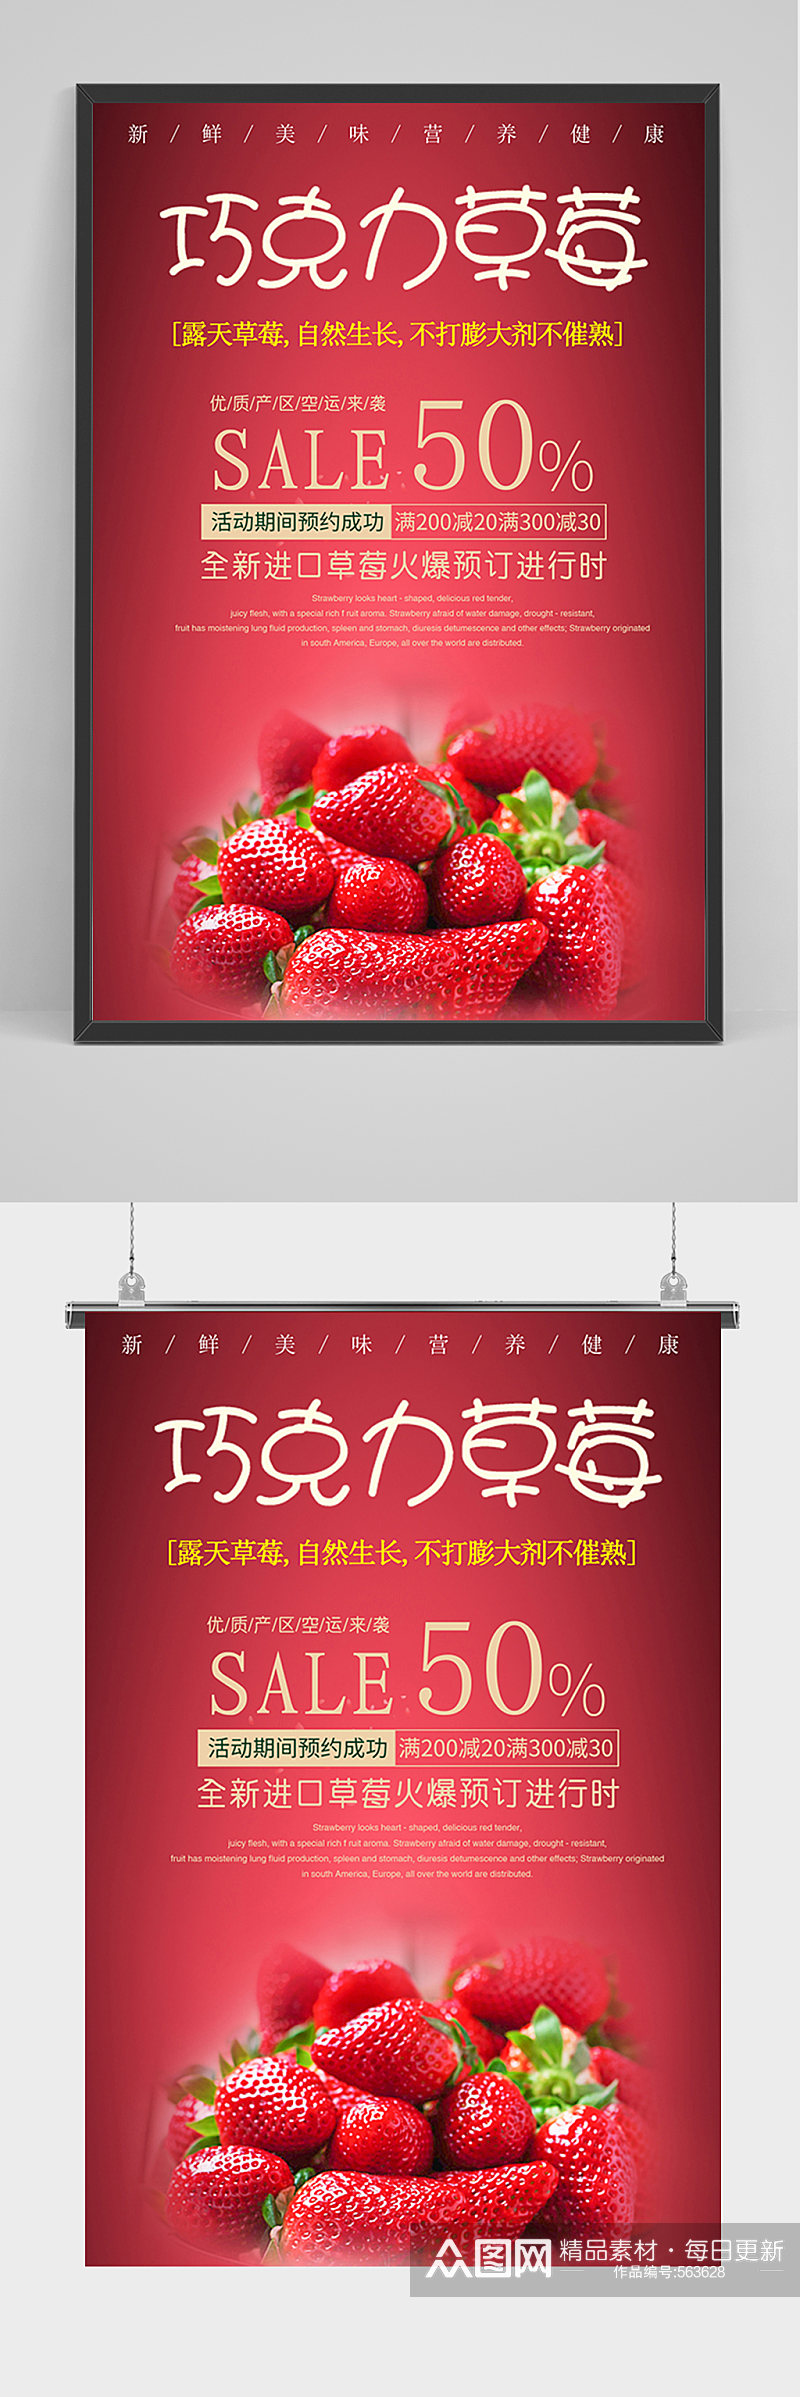 红色草莓巧克力促销海报素材